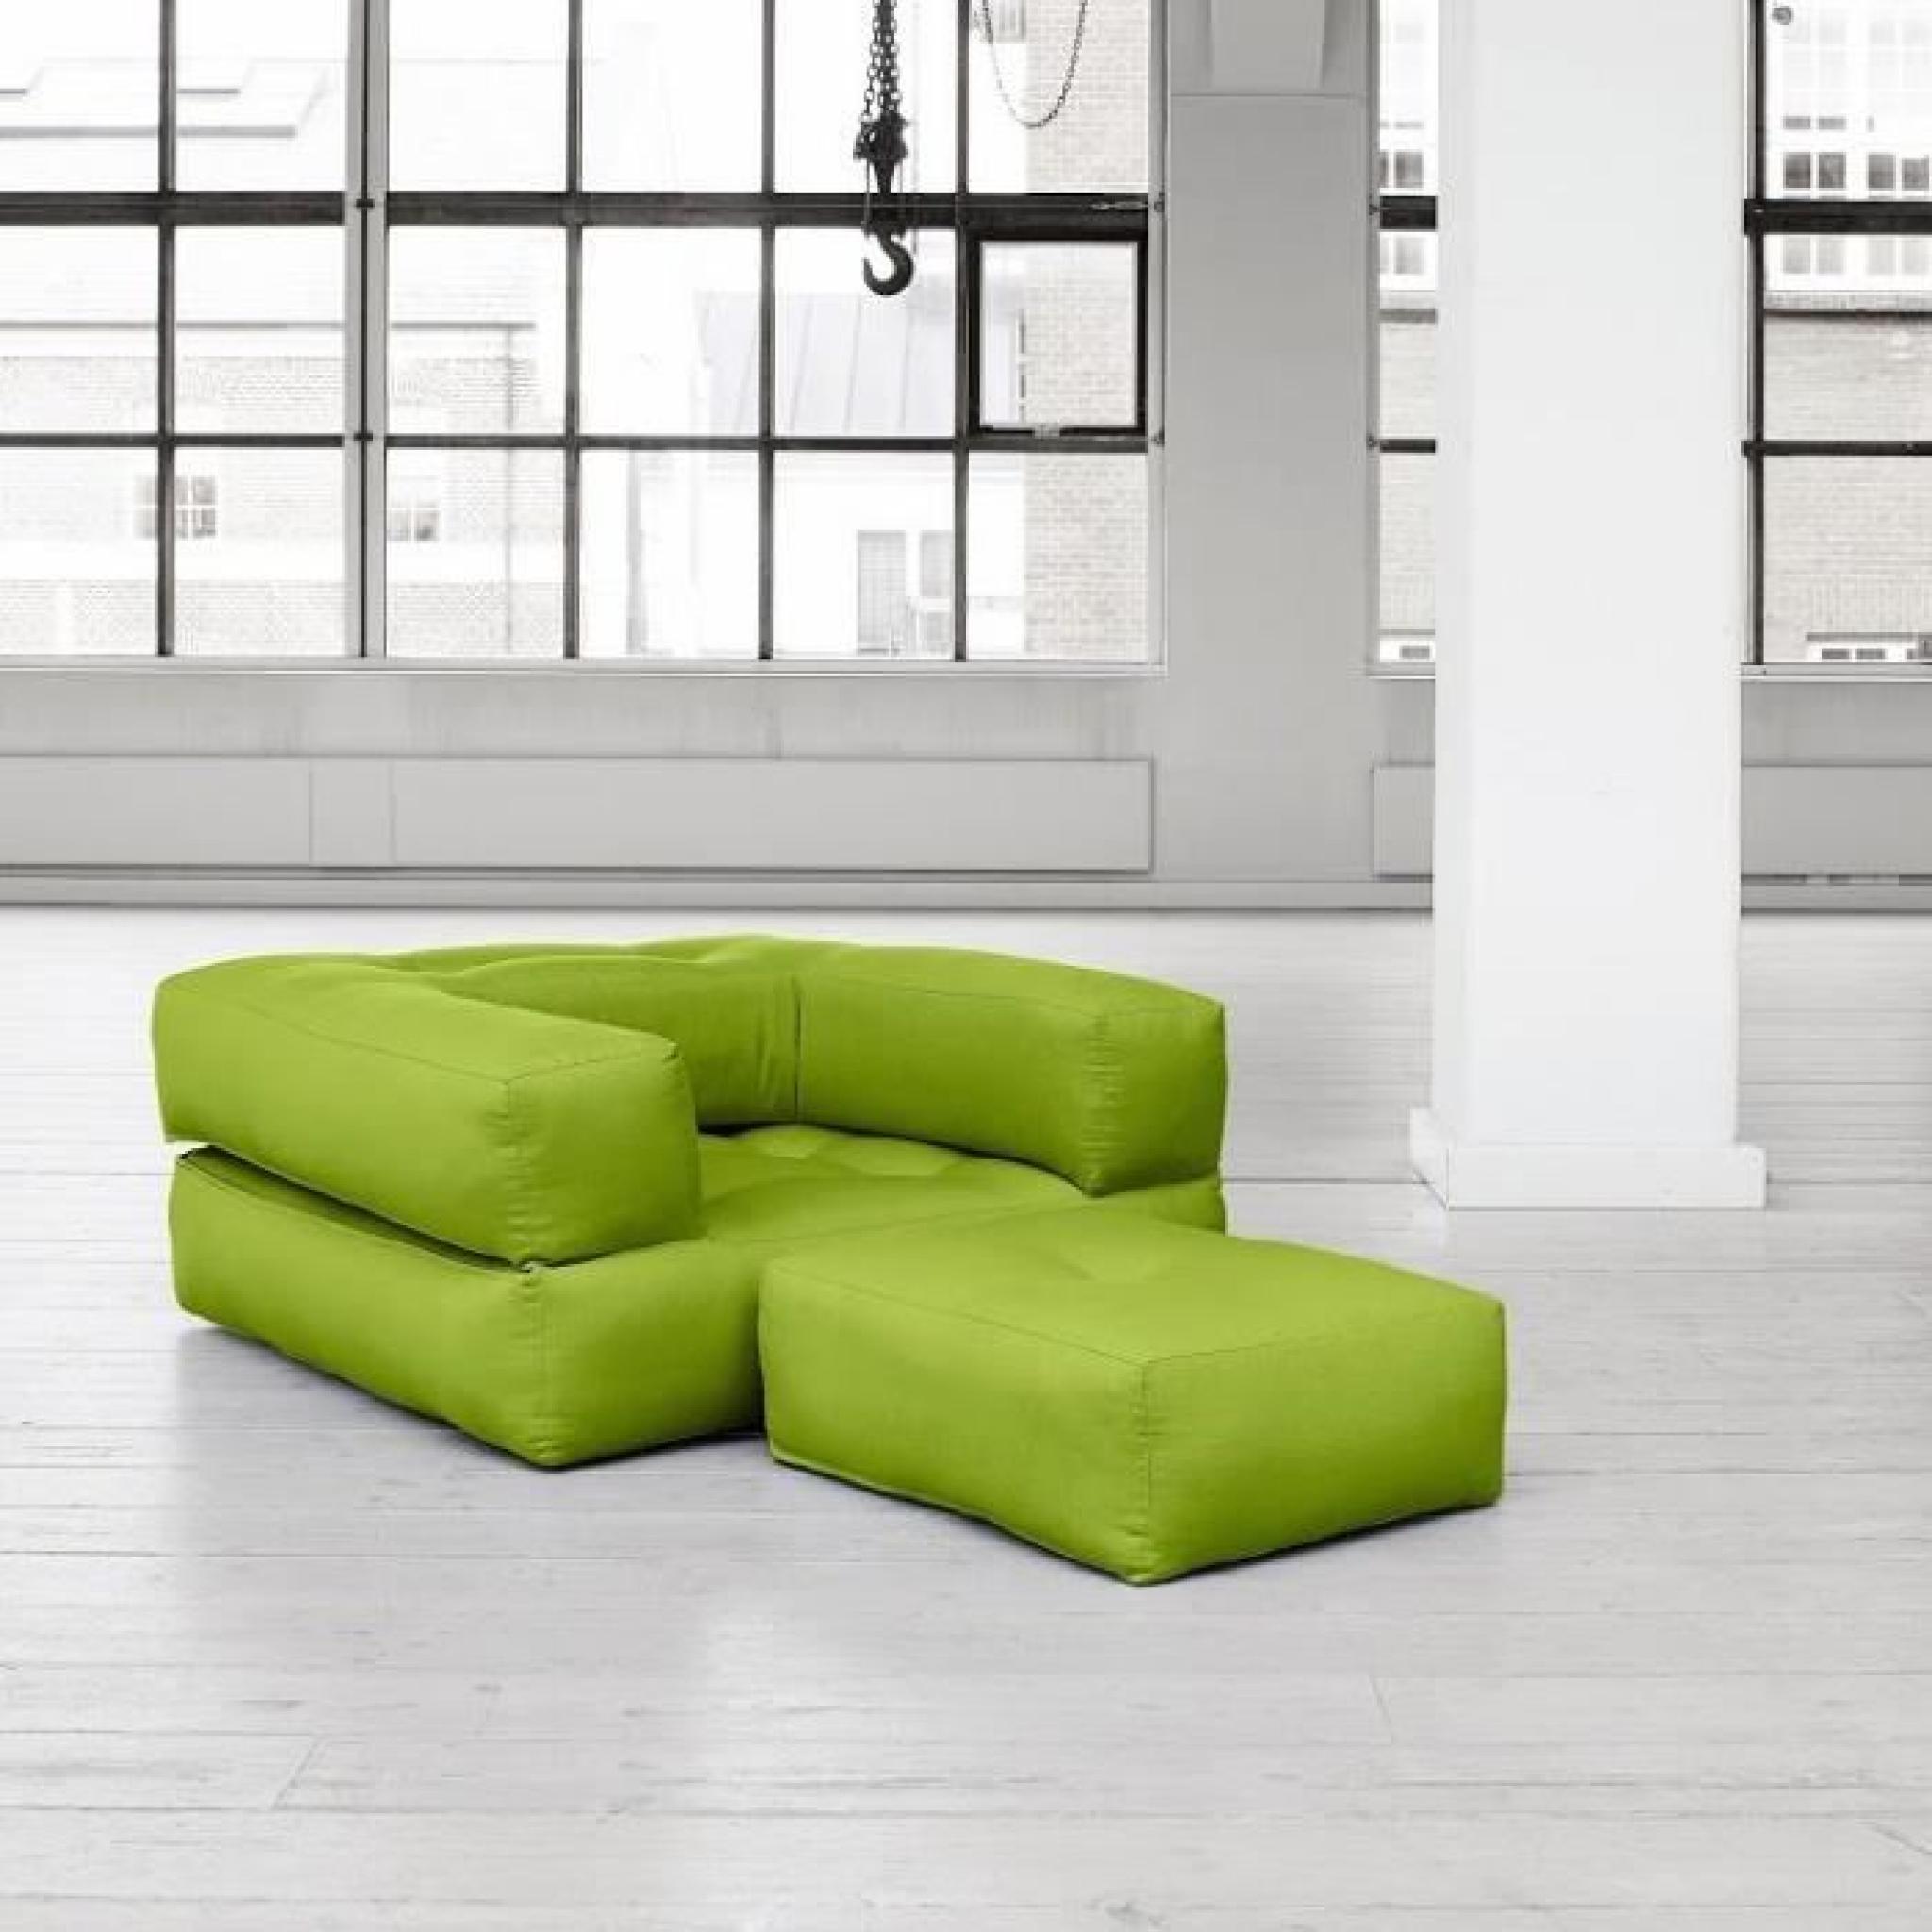 Fauteuil CUBE 3 en 1 futon vert pistache couchage 90*190*25cm pas cher